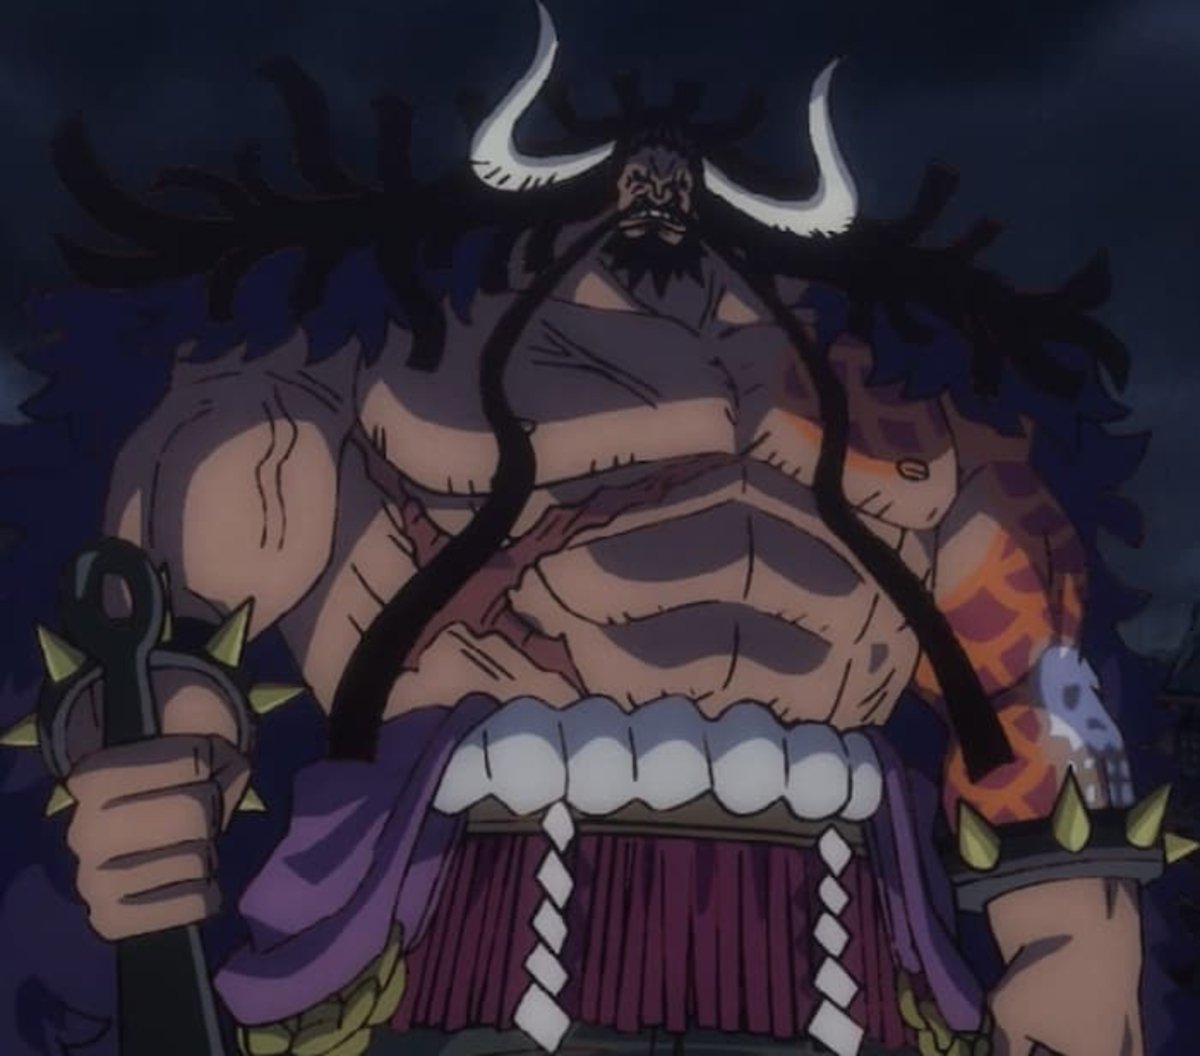 Kaido sentía un gran respeto por los oponentes que le daban una buena pelea, dejando ver su honor como pirata